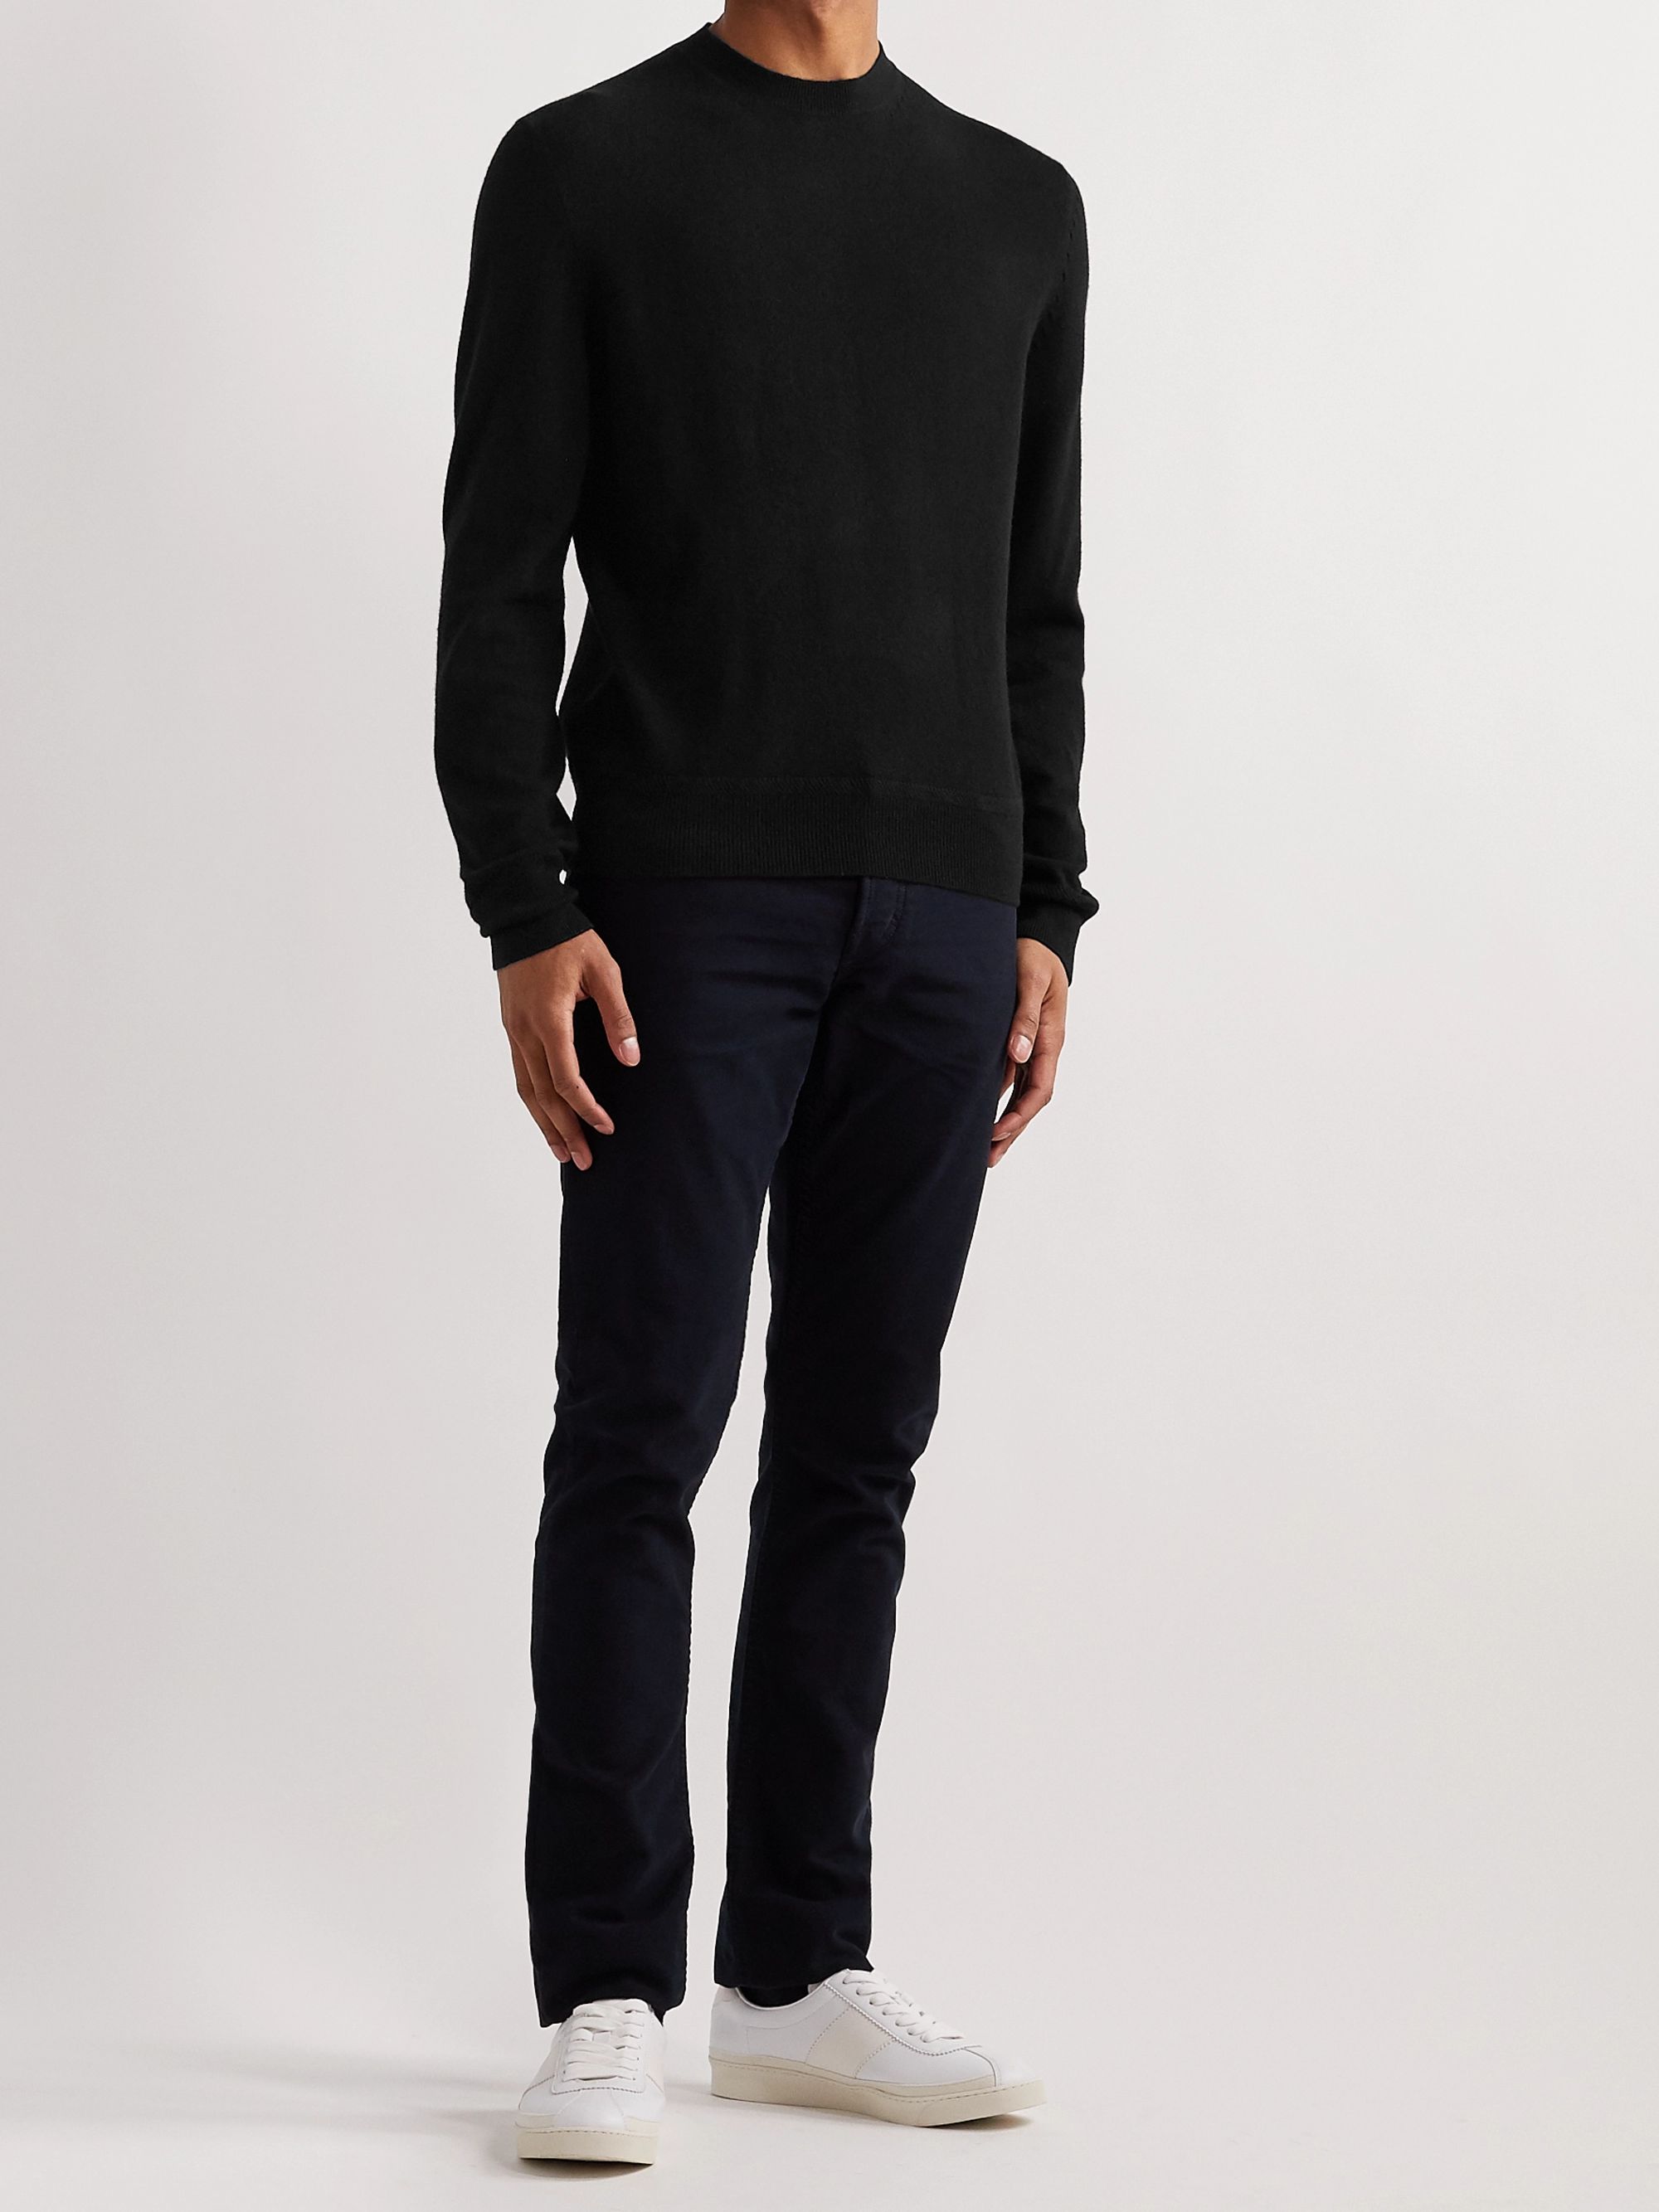 Black Slim-Fit Cashmere Sweater | TOM FORD | MR PORTER